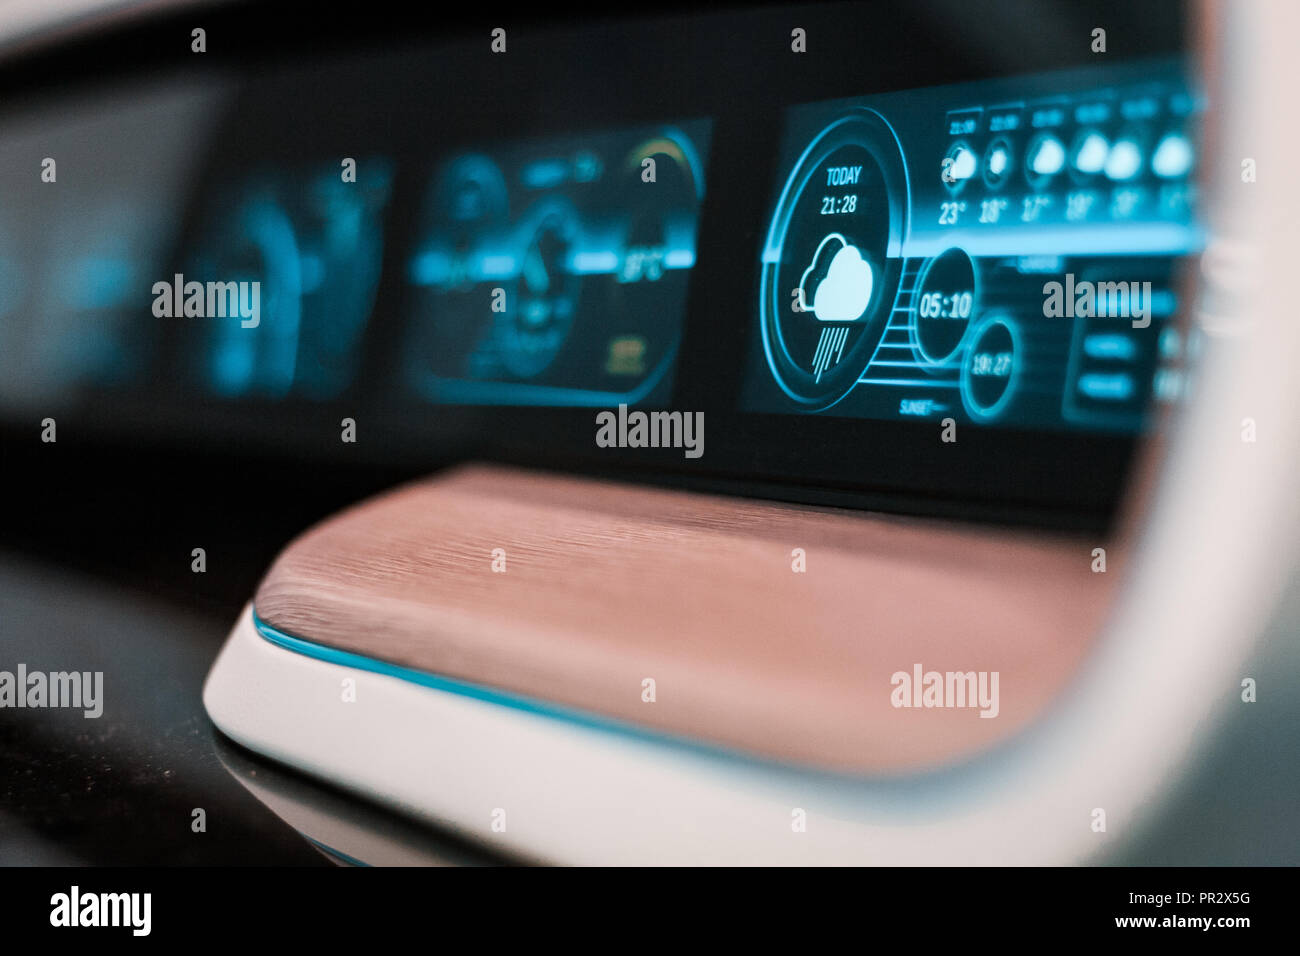 Holz und led-Interface Design. Futuristische Control Panel und Dashboard, Details von einem neuen Konzept für Yacht und Schiff Navigation. GPS-Systeme. Stockfoto